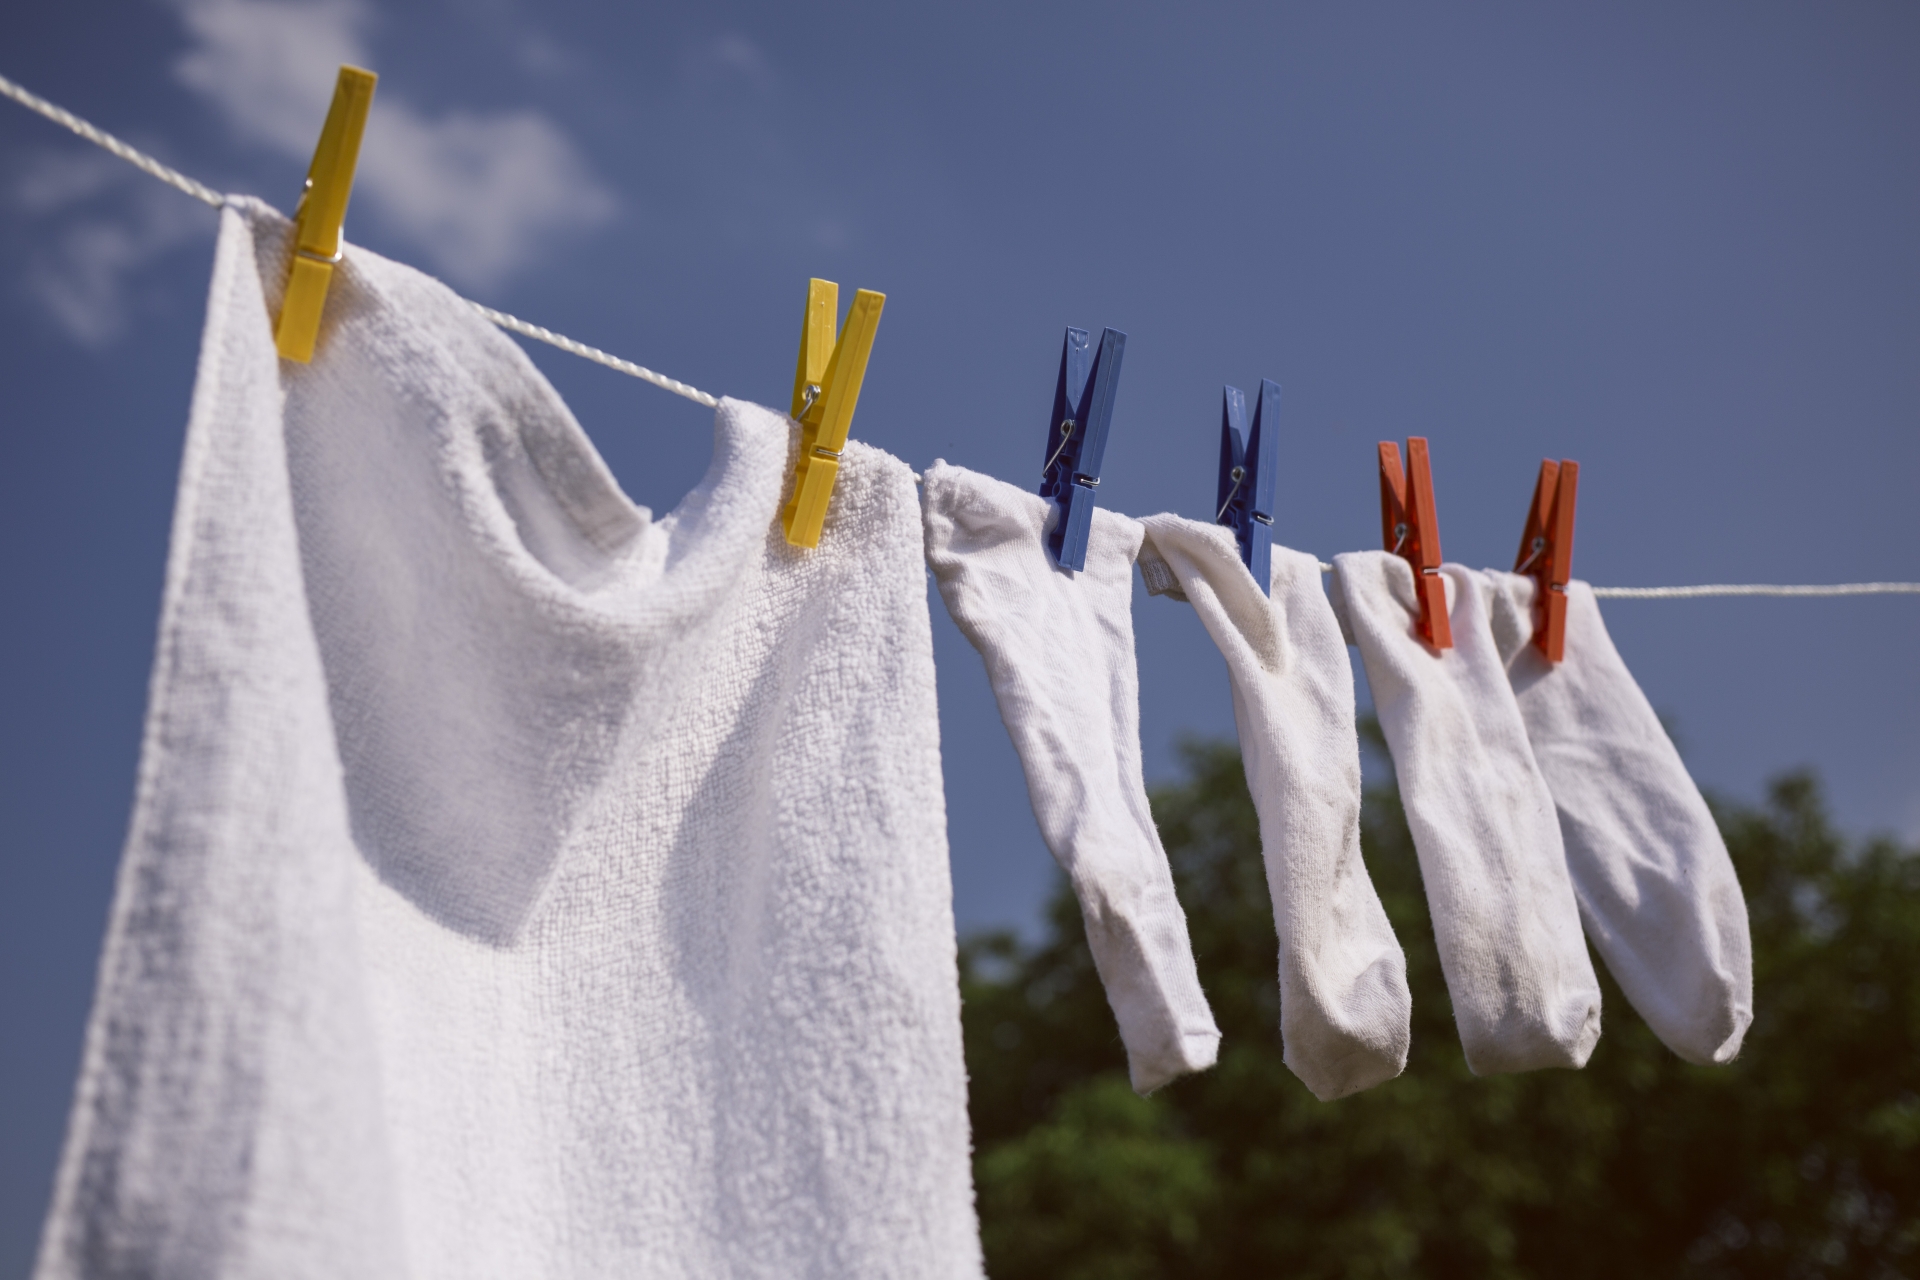 ジャージを洗濯したらほこりが！洗濯物のほこりの原因と対処法